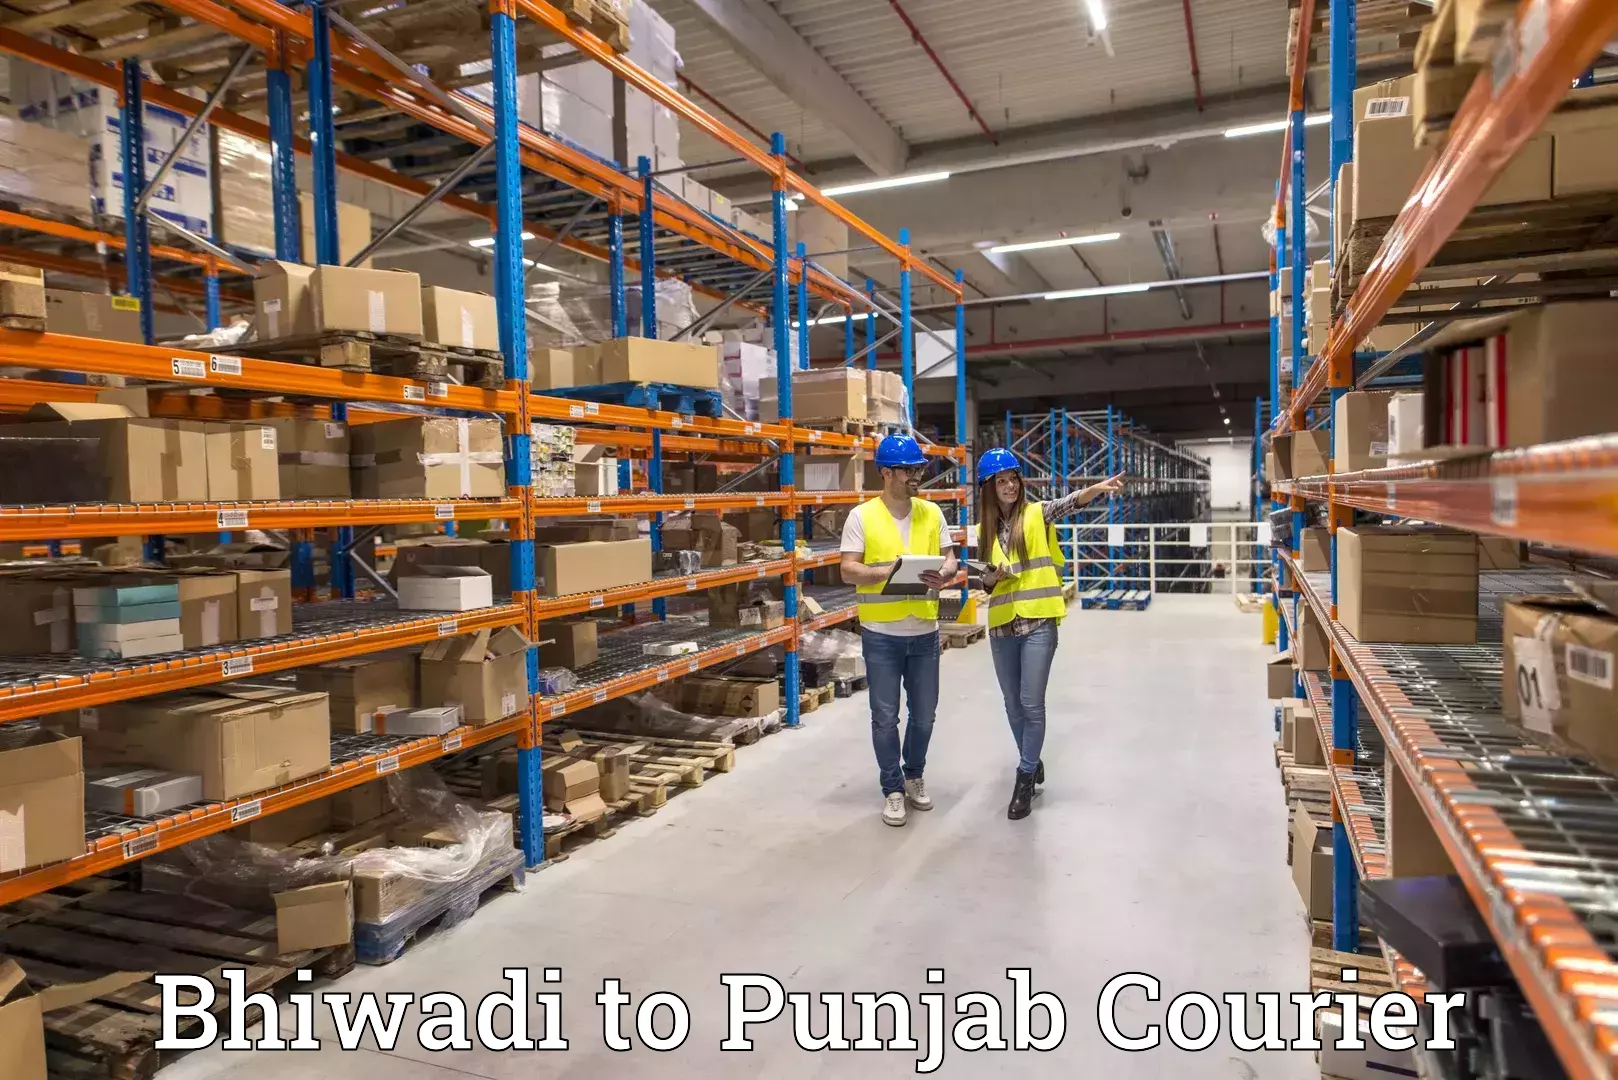 Express mail solutions Bhiwadi to Punjab